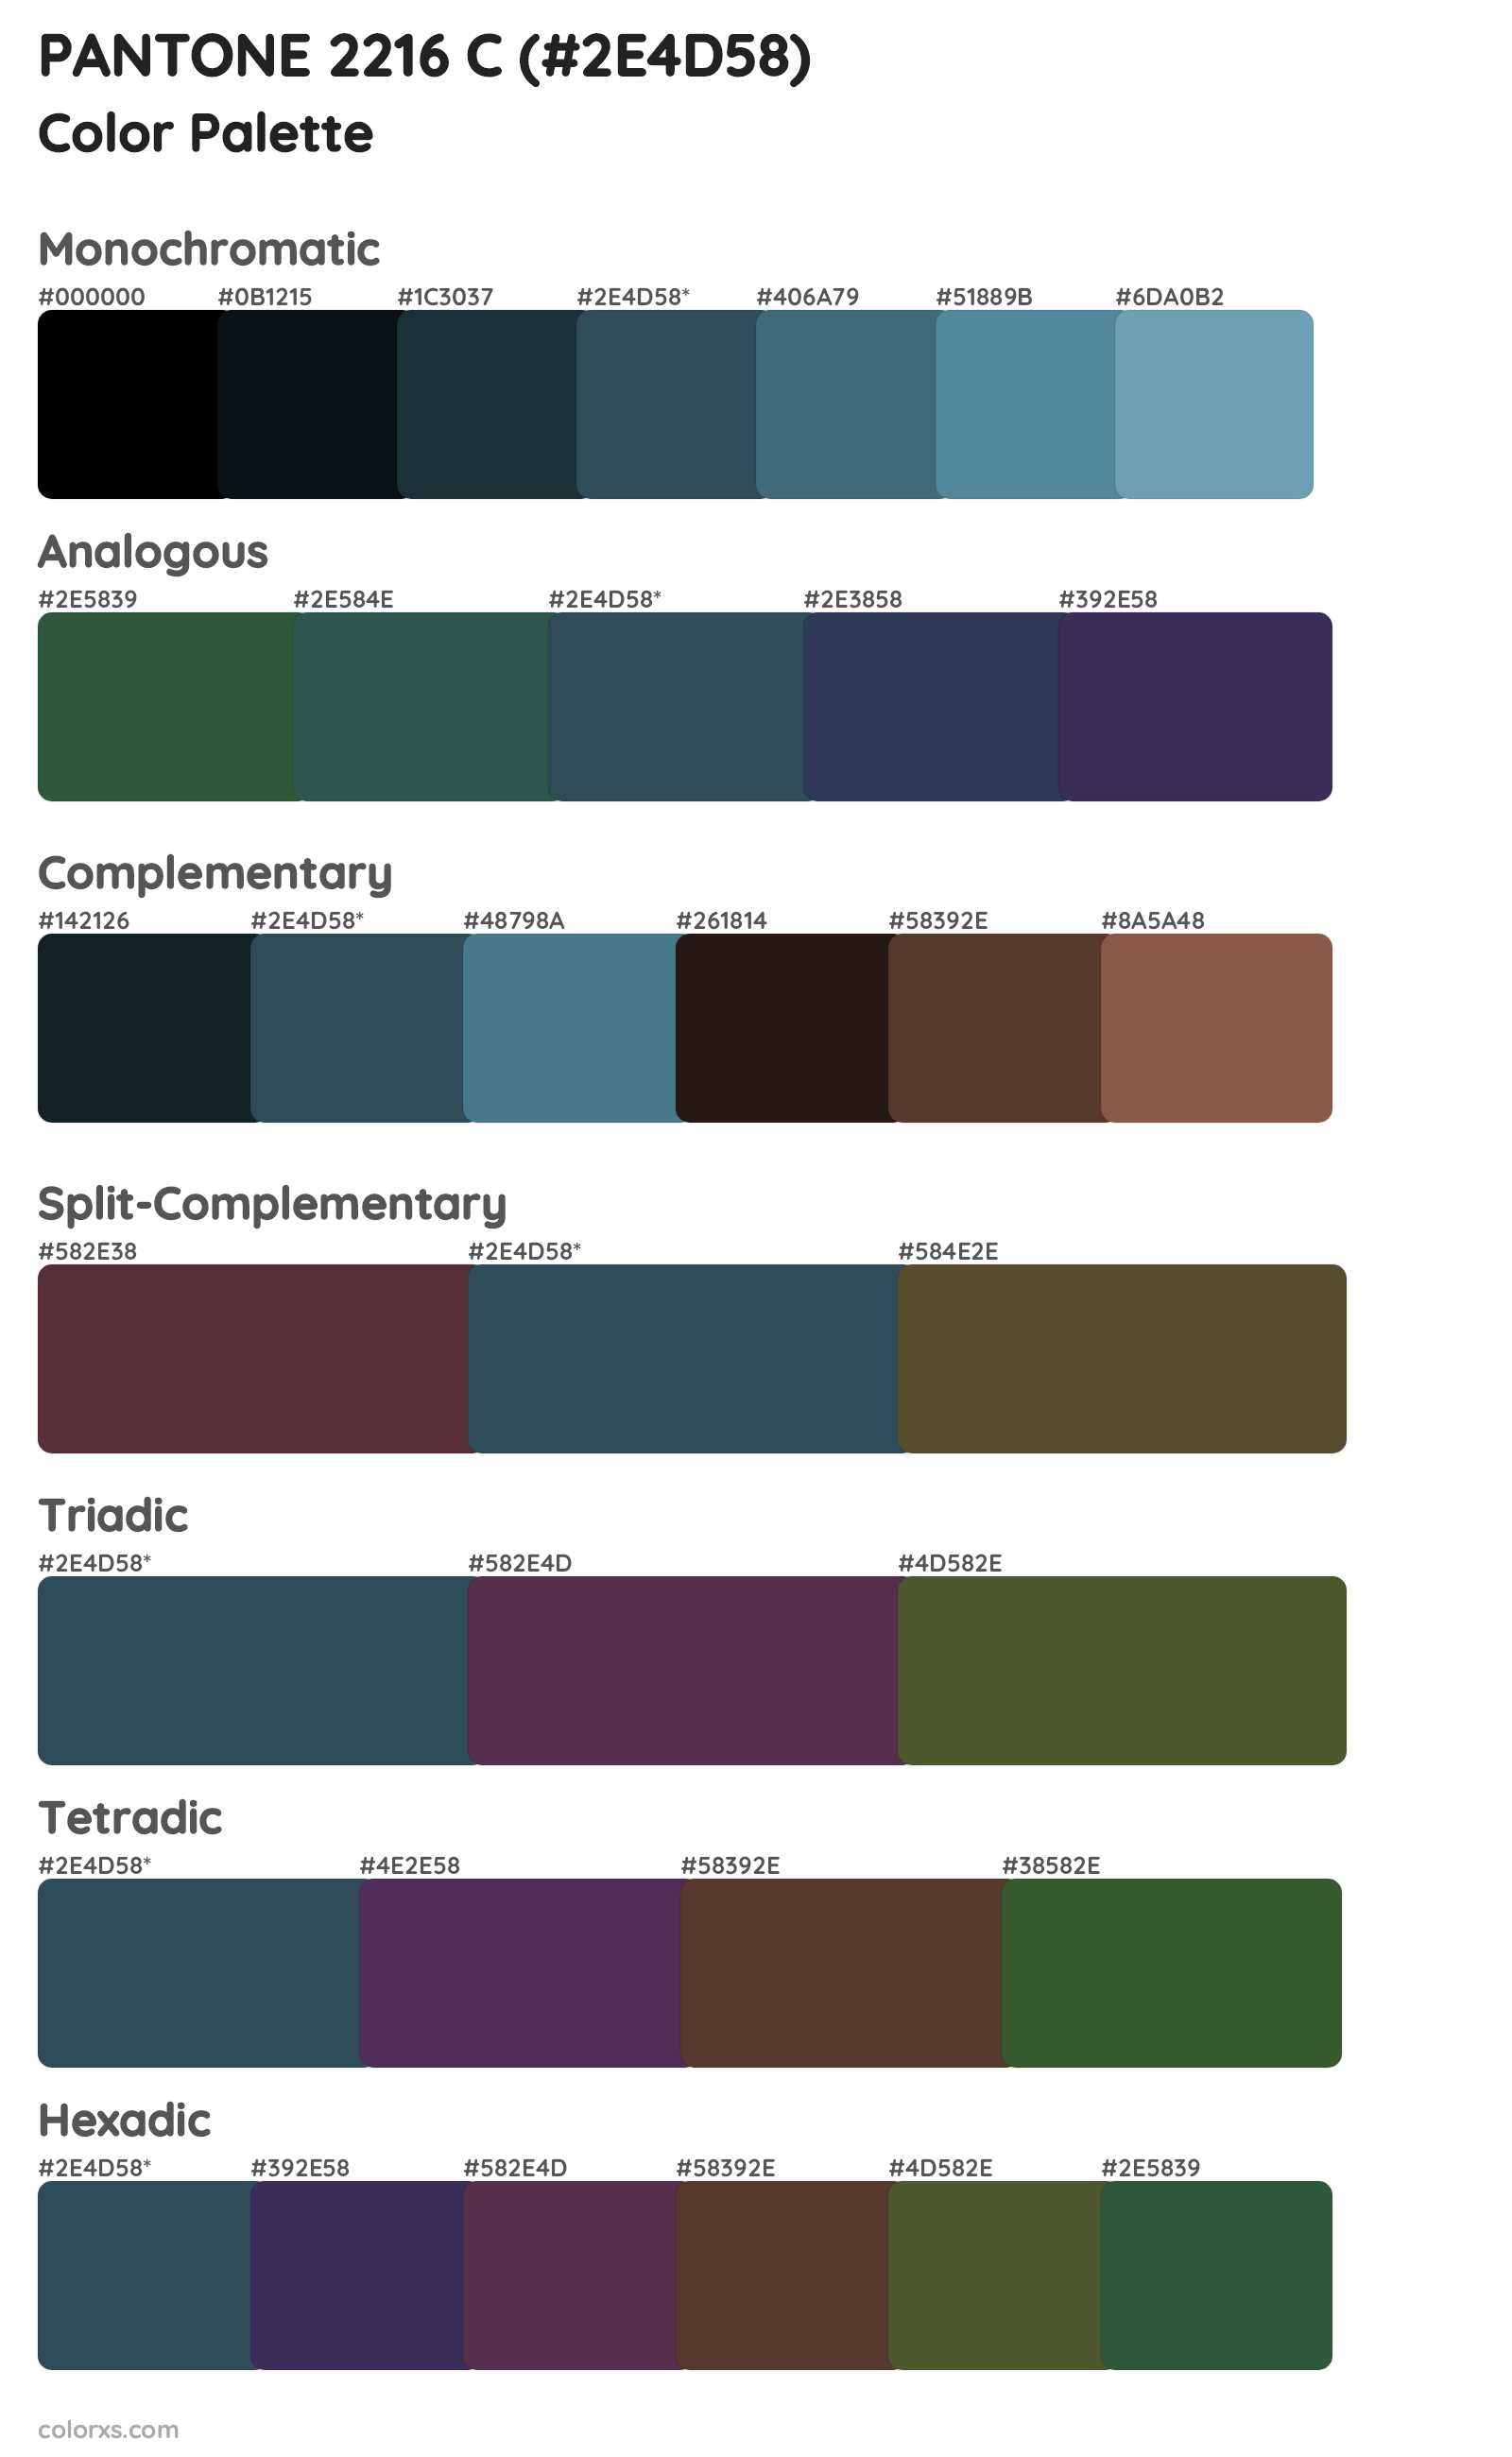 PANTONE 2216 C Color Scheme Palettes